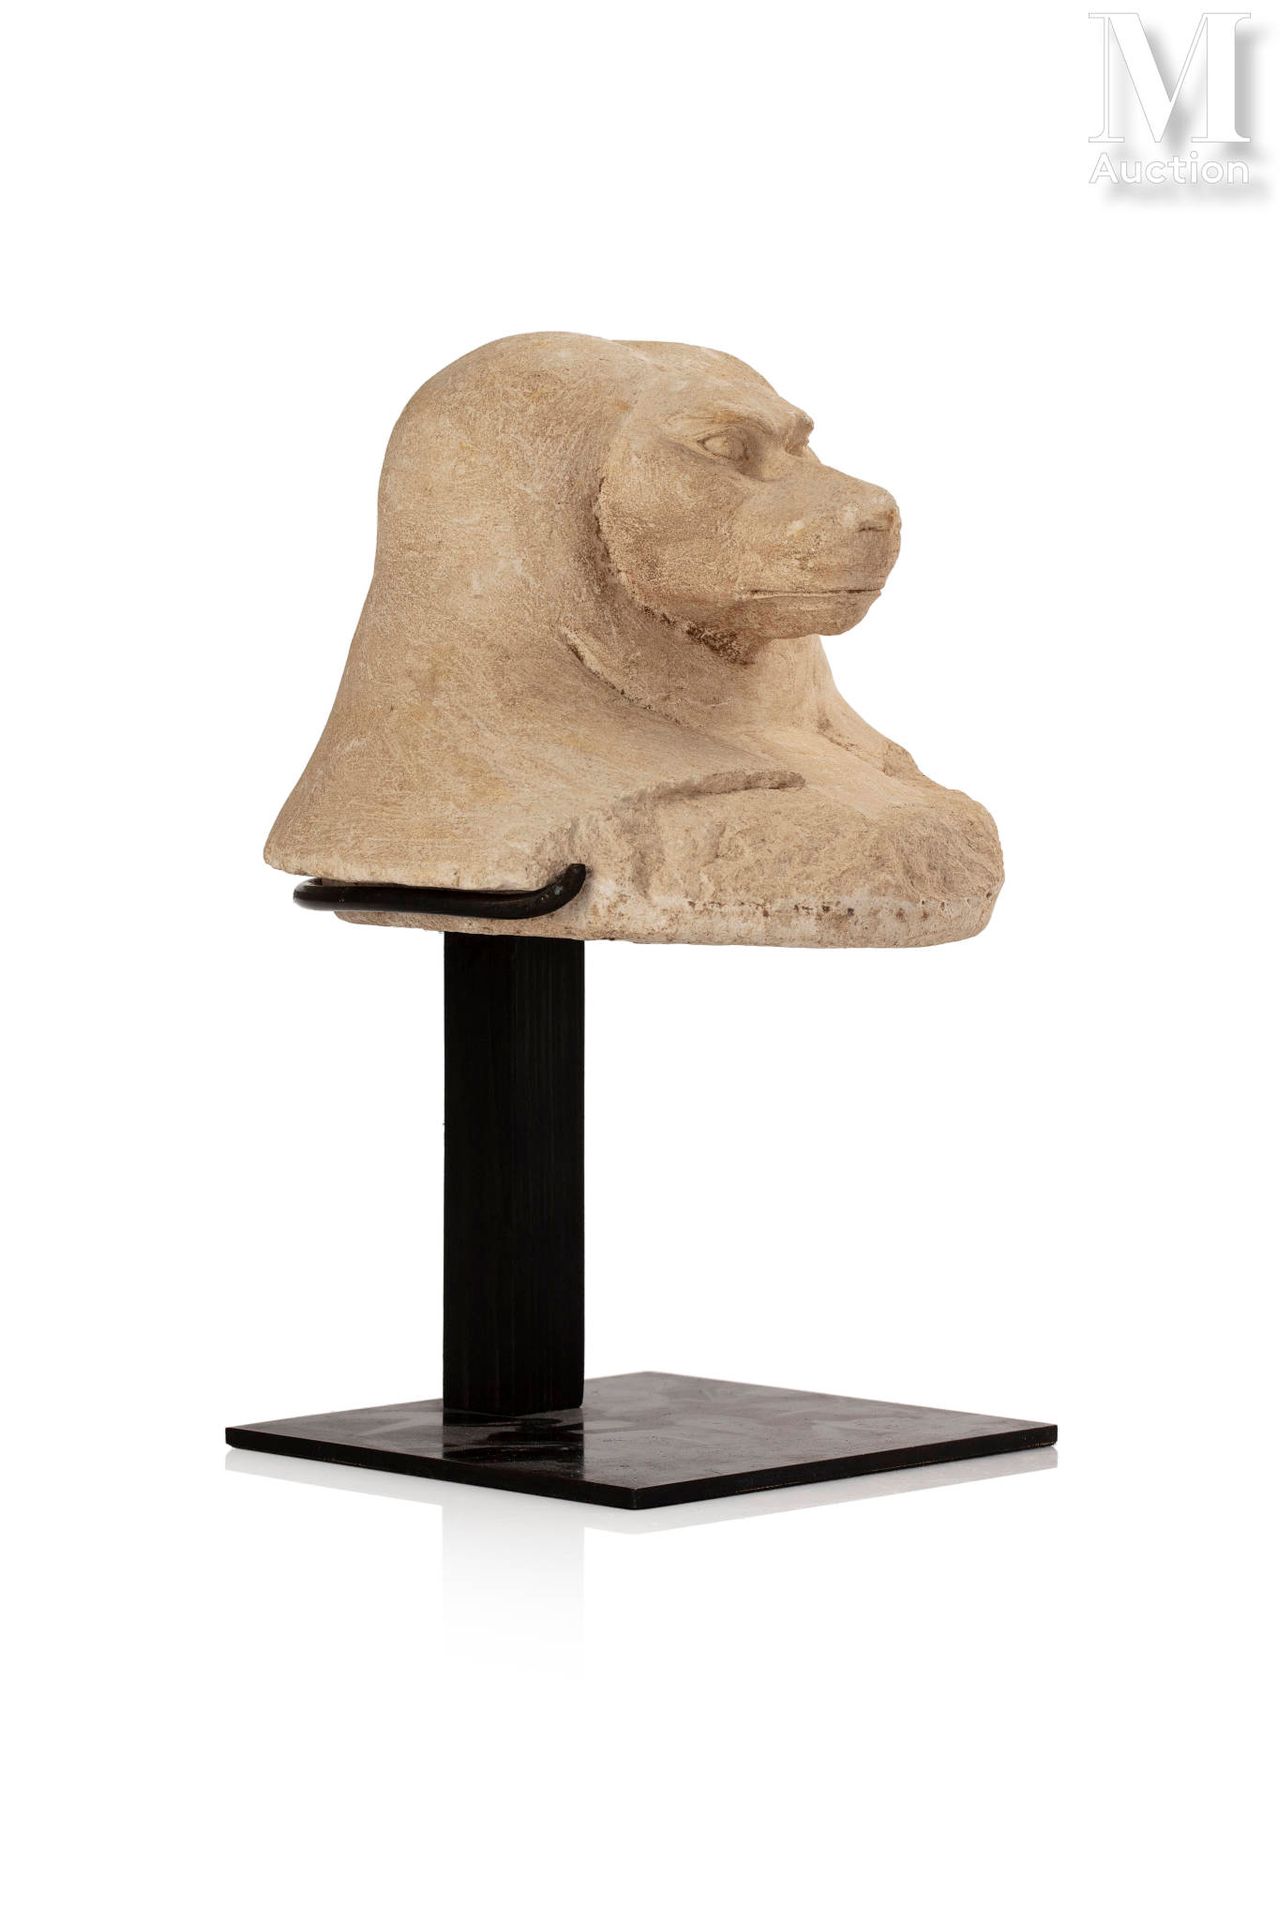 Couvercle de vase canope représentant Hâpy (le babouin) Limestone.
Egypt, Late P&hellip;